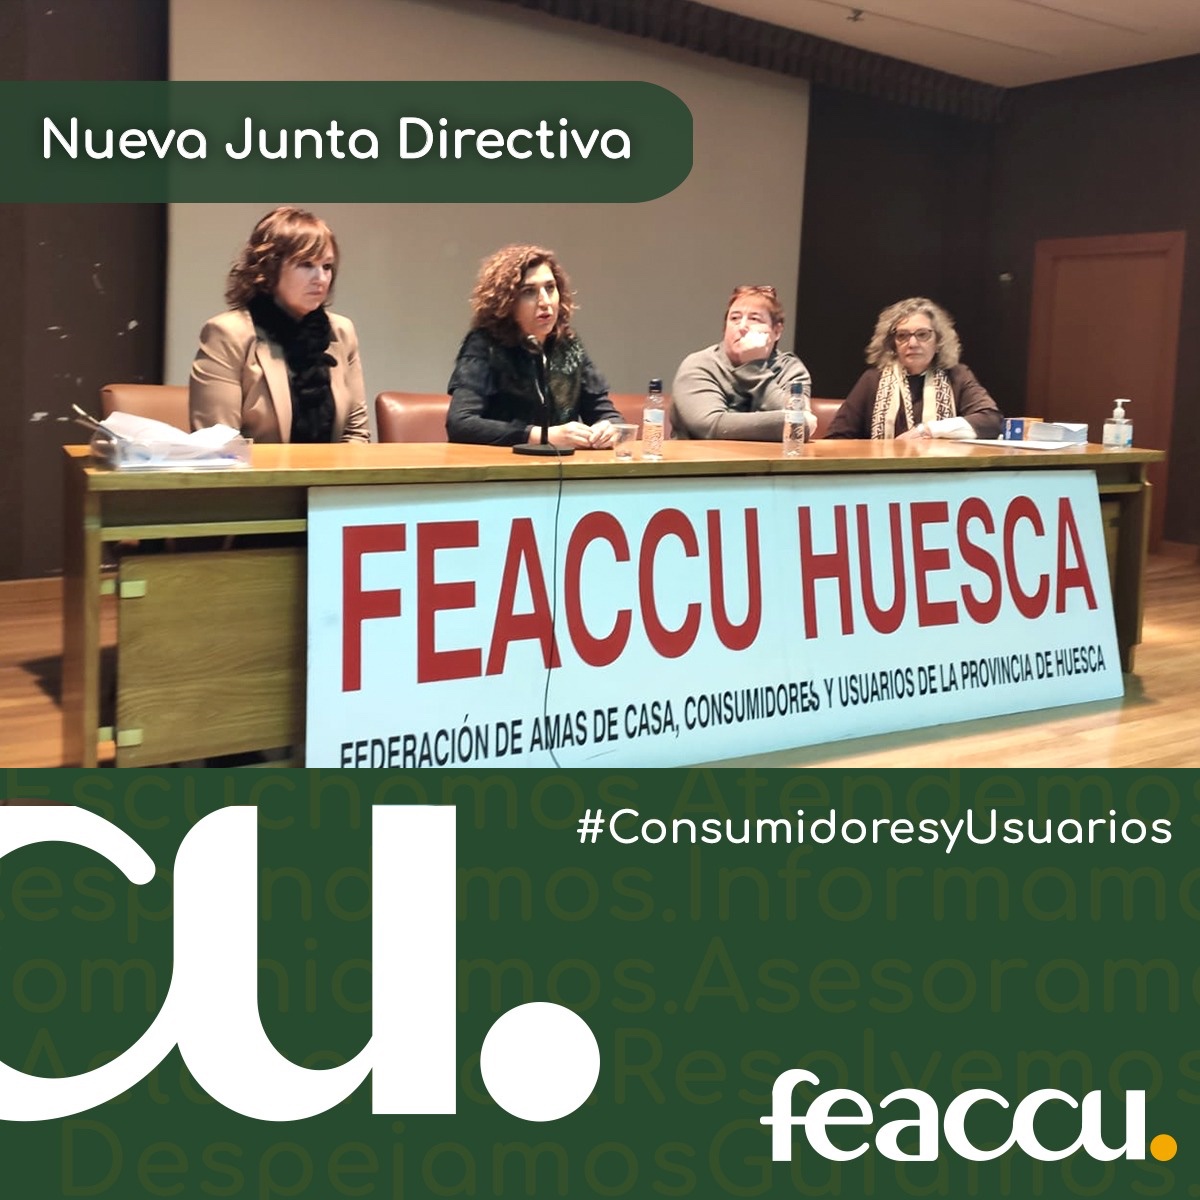 En este momento estás viendo Nueva junta directiva Feaccu Huesca